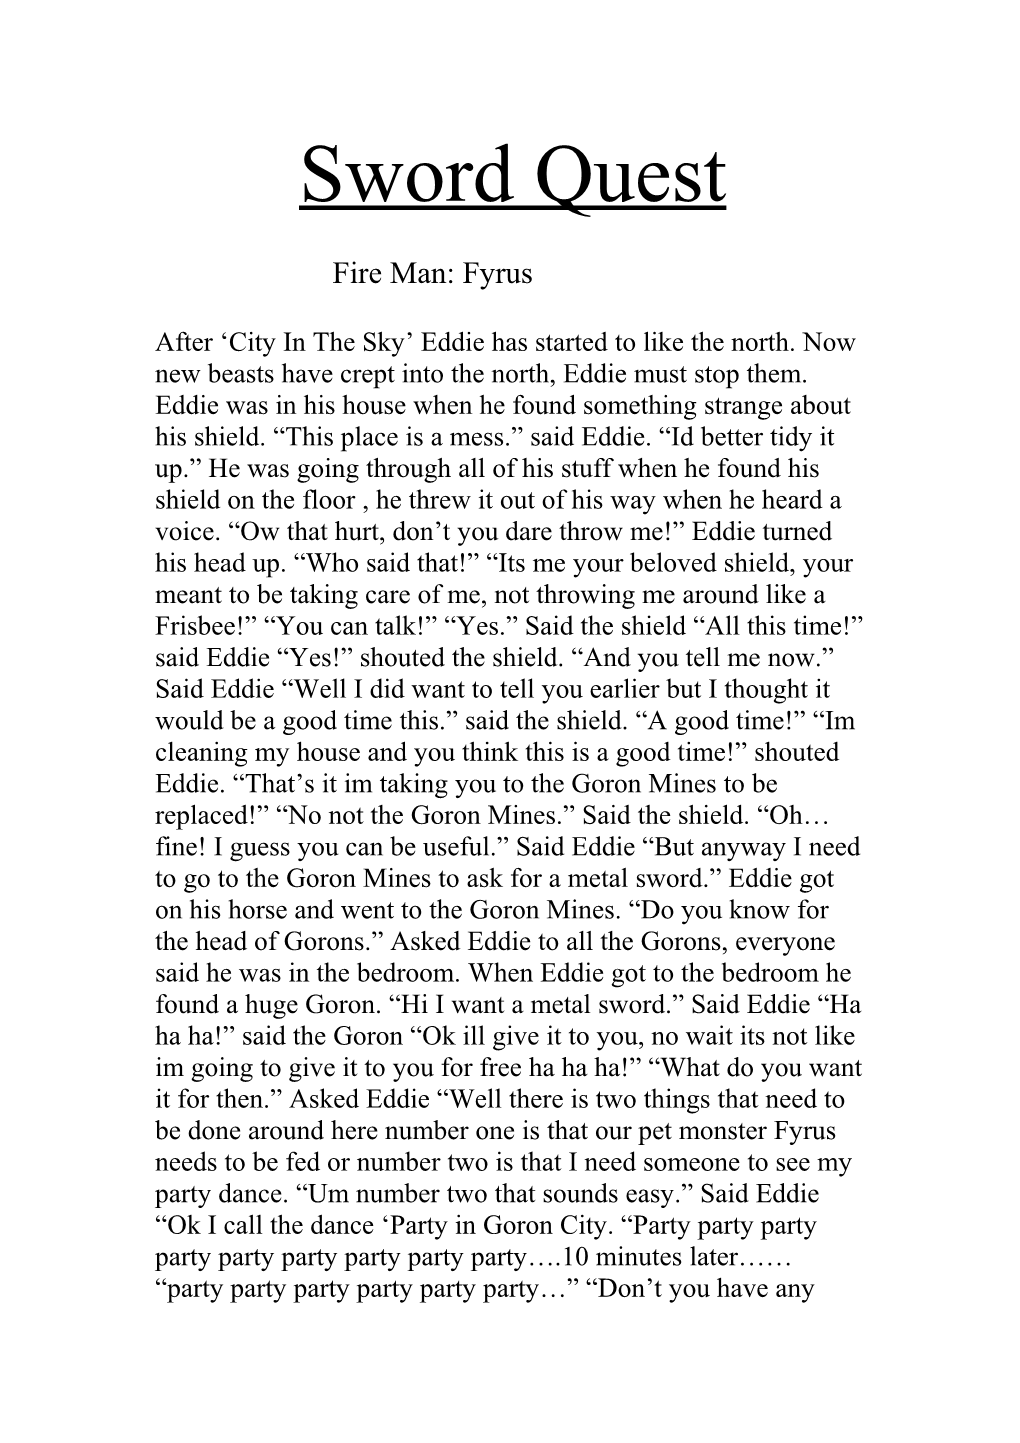 Fire Man: Fyrus